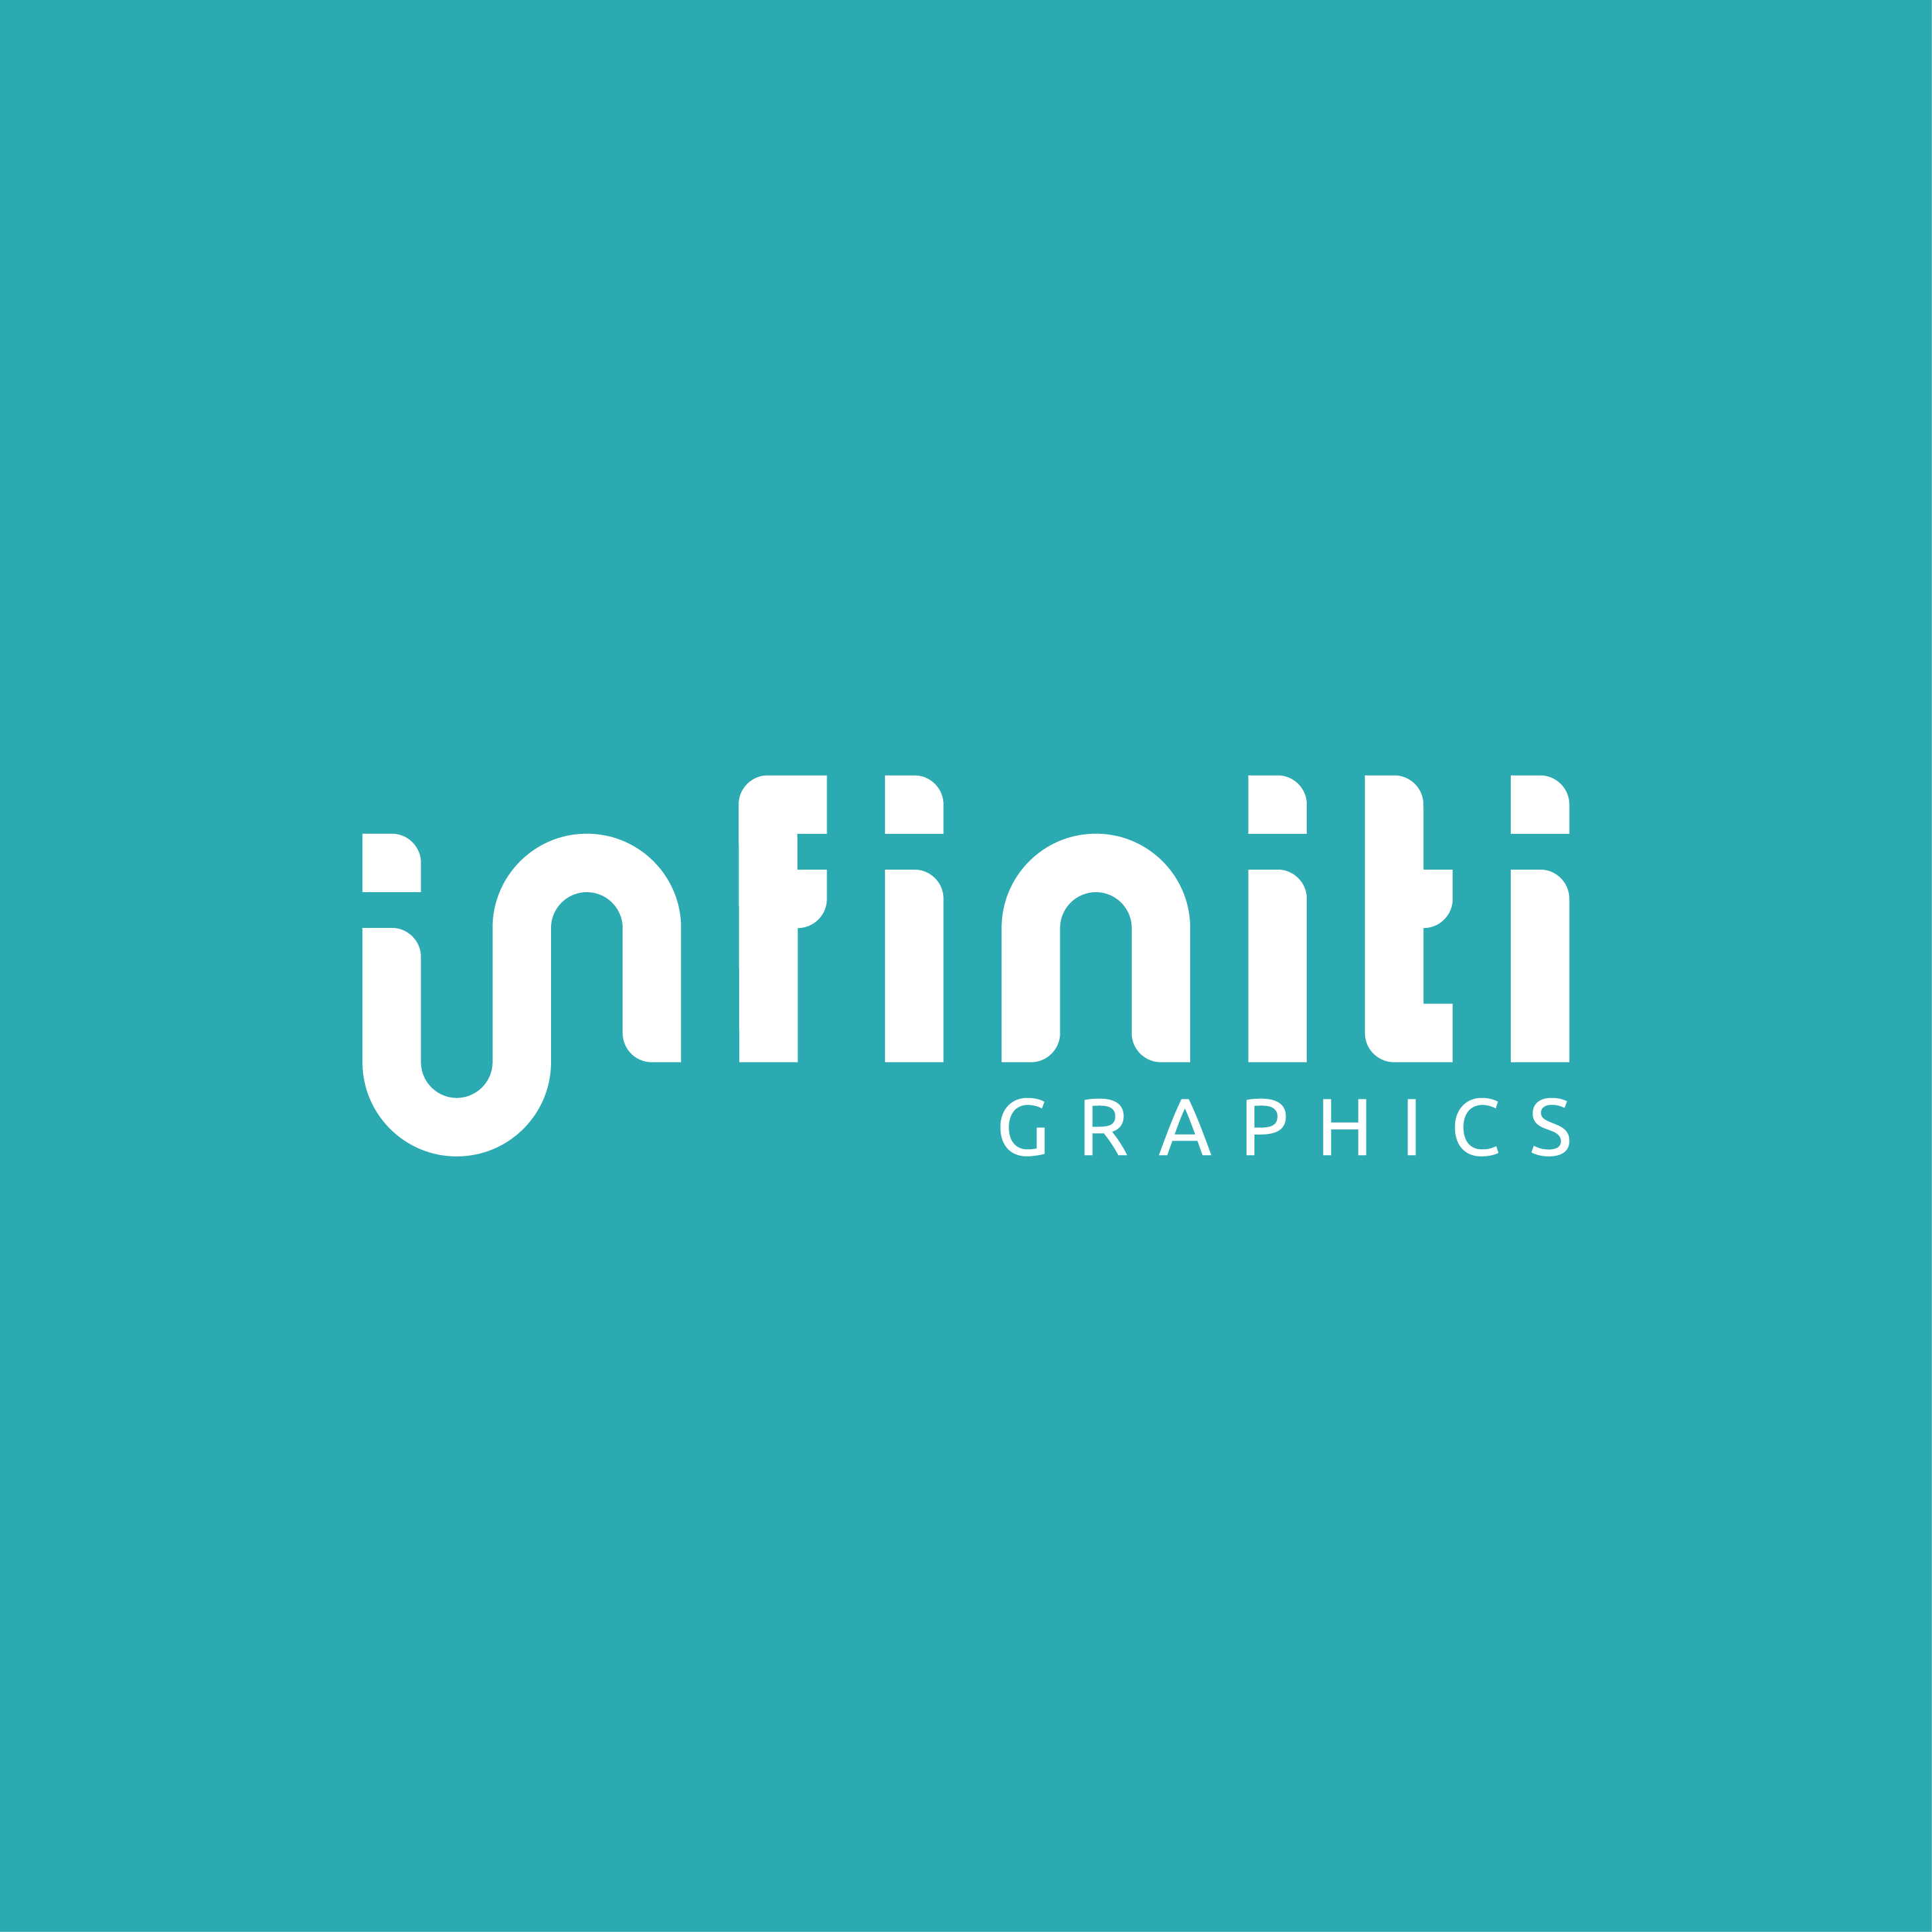 Infiniti Graphics